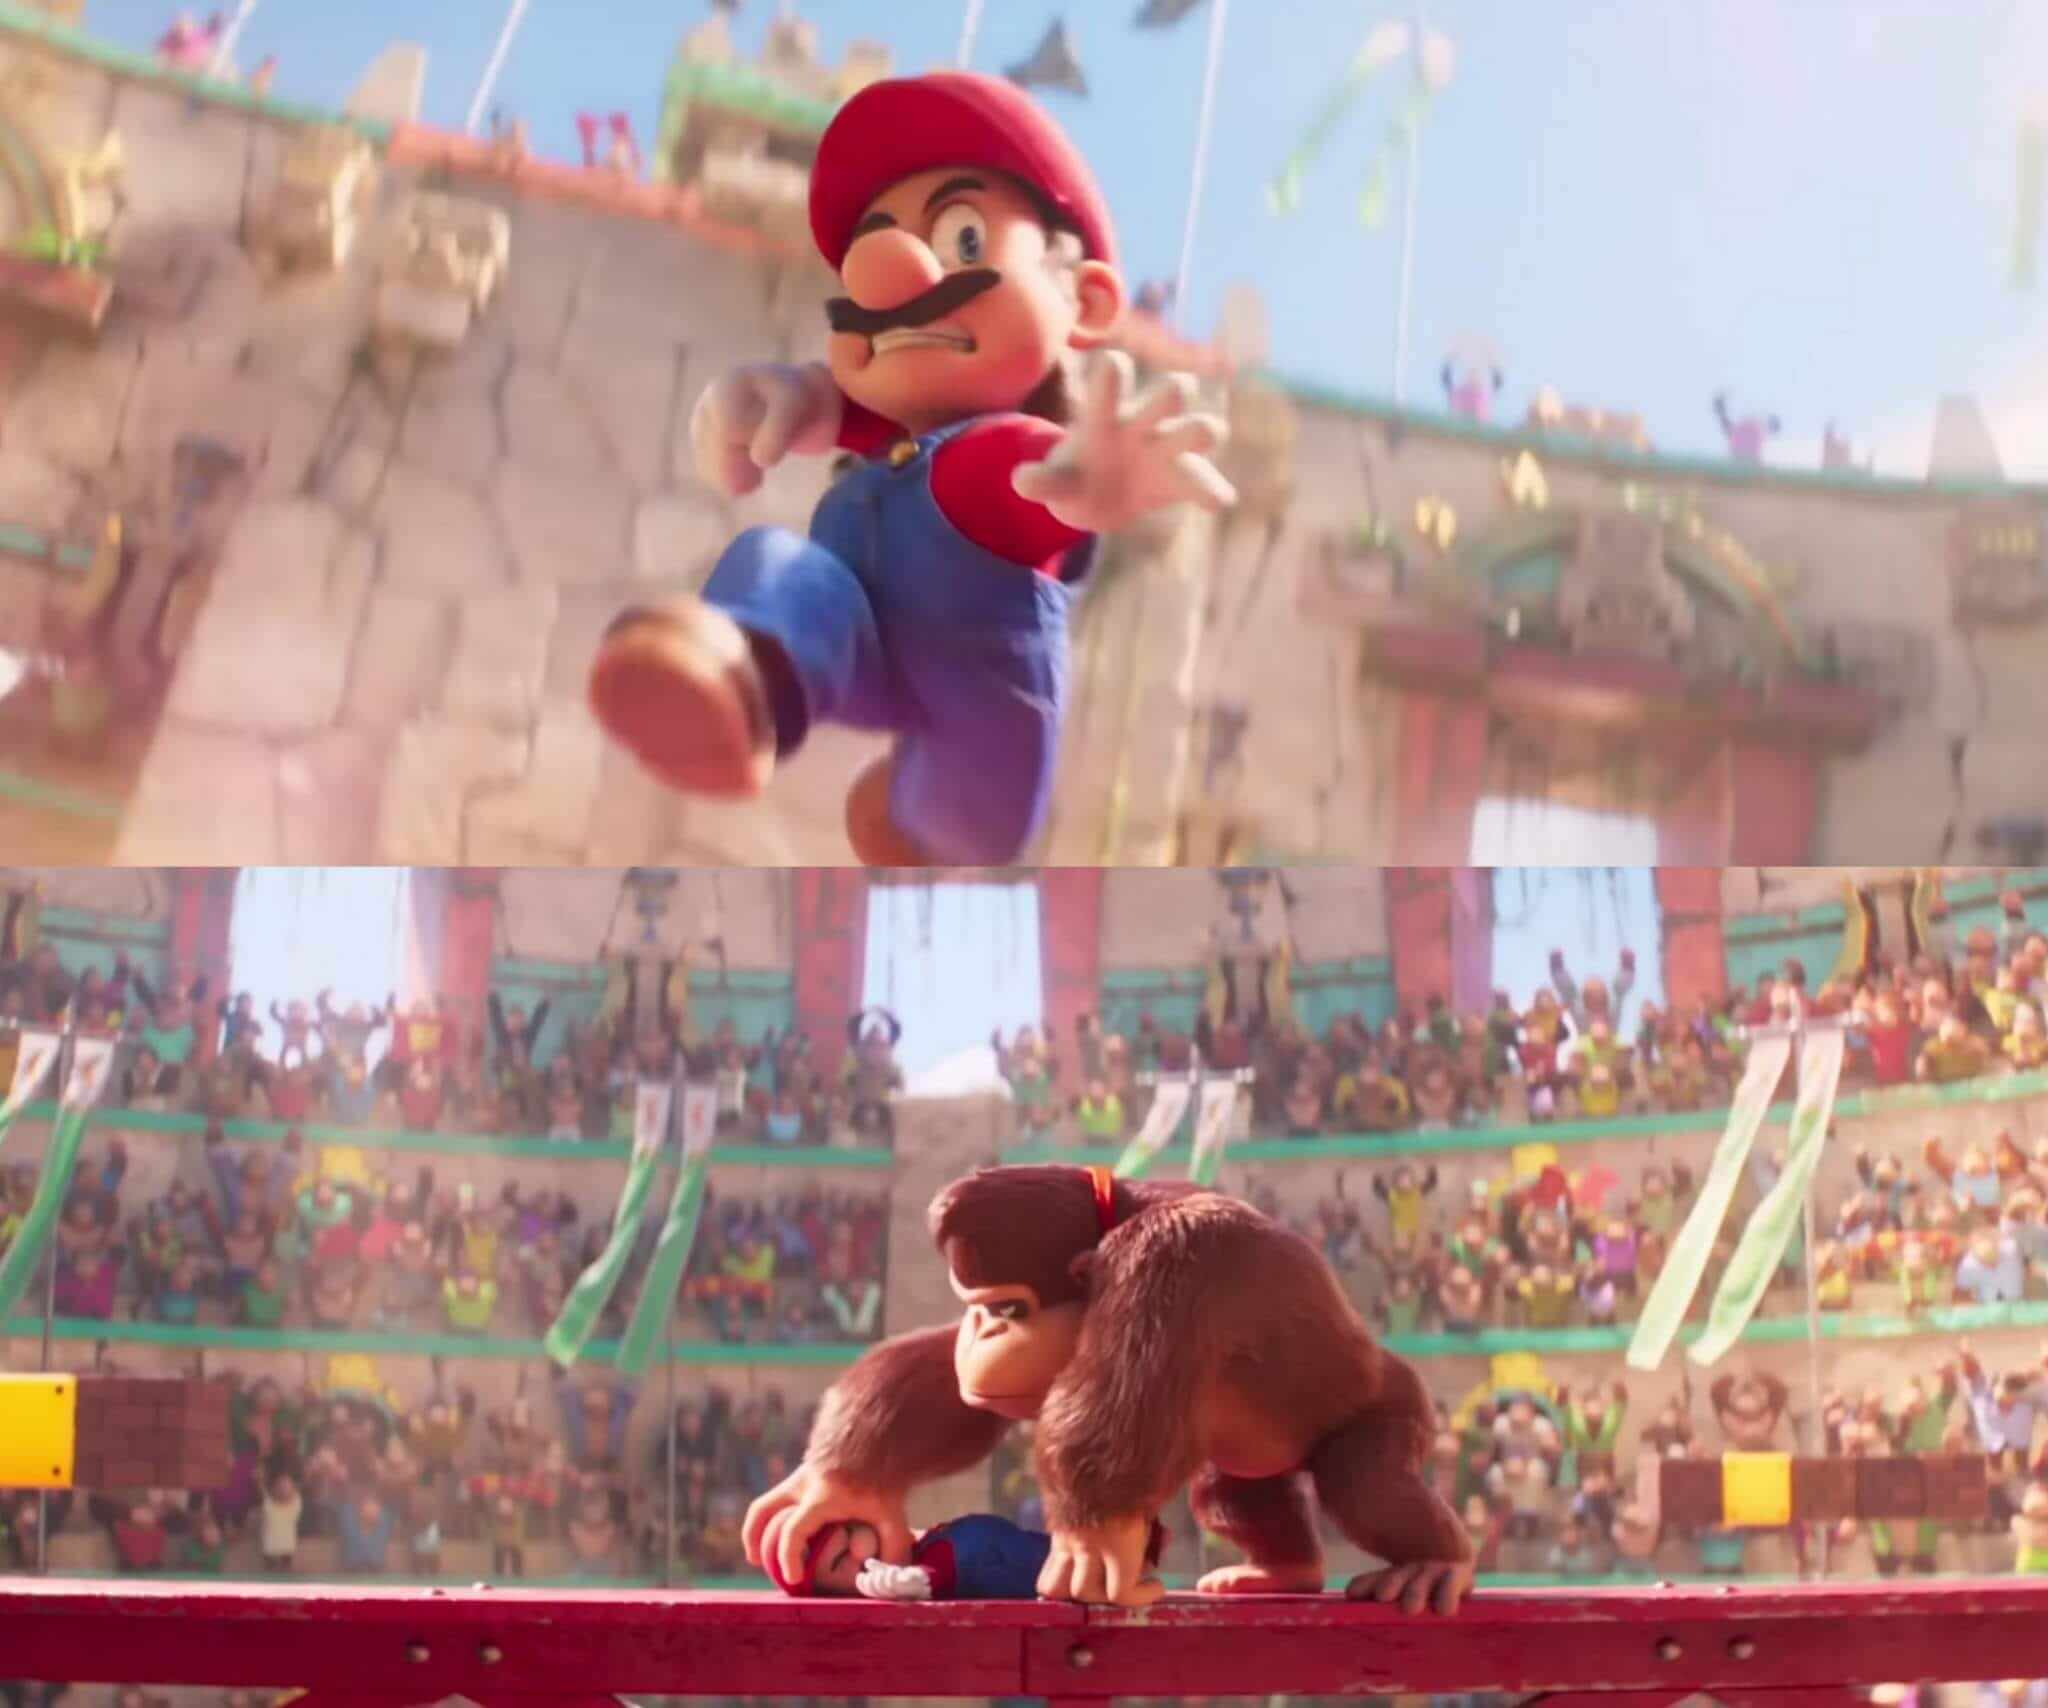 Ir a la pagina de la plantilla Mario apunto de golpear a Donkey Kong | Mario vencido por Donkey Kong.